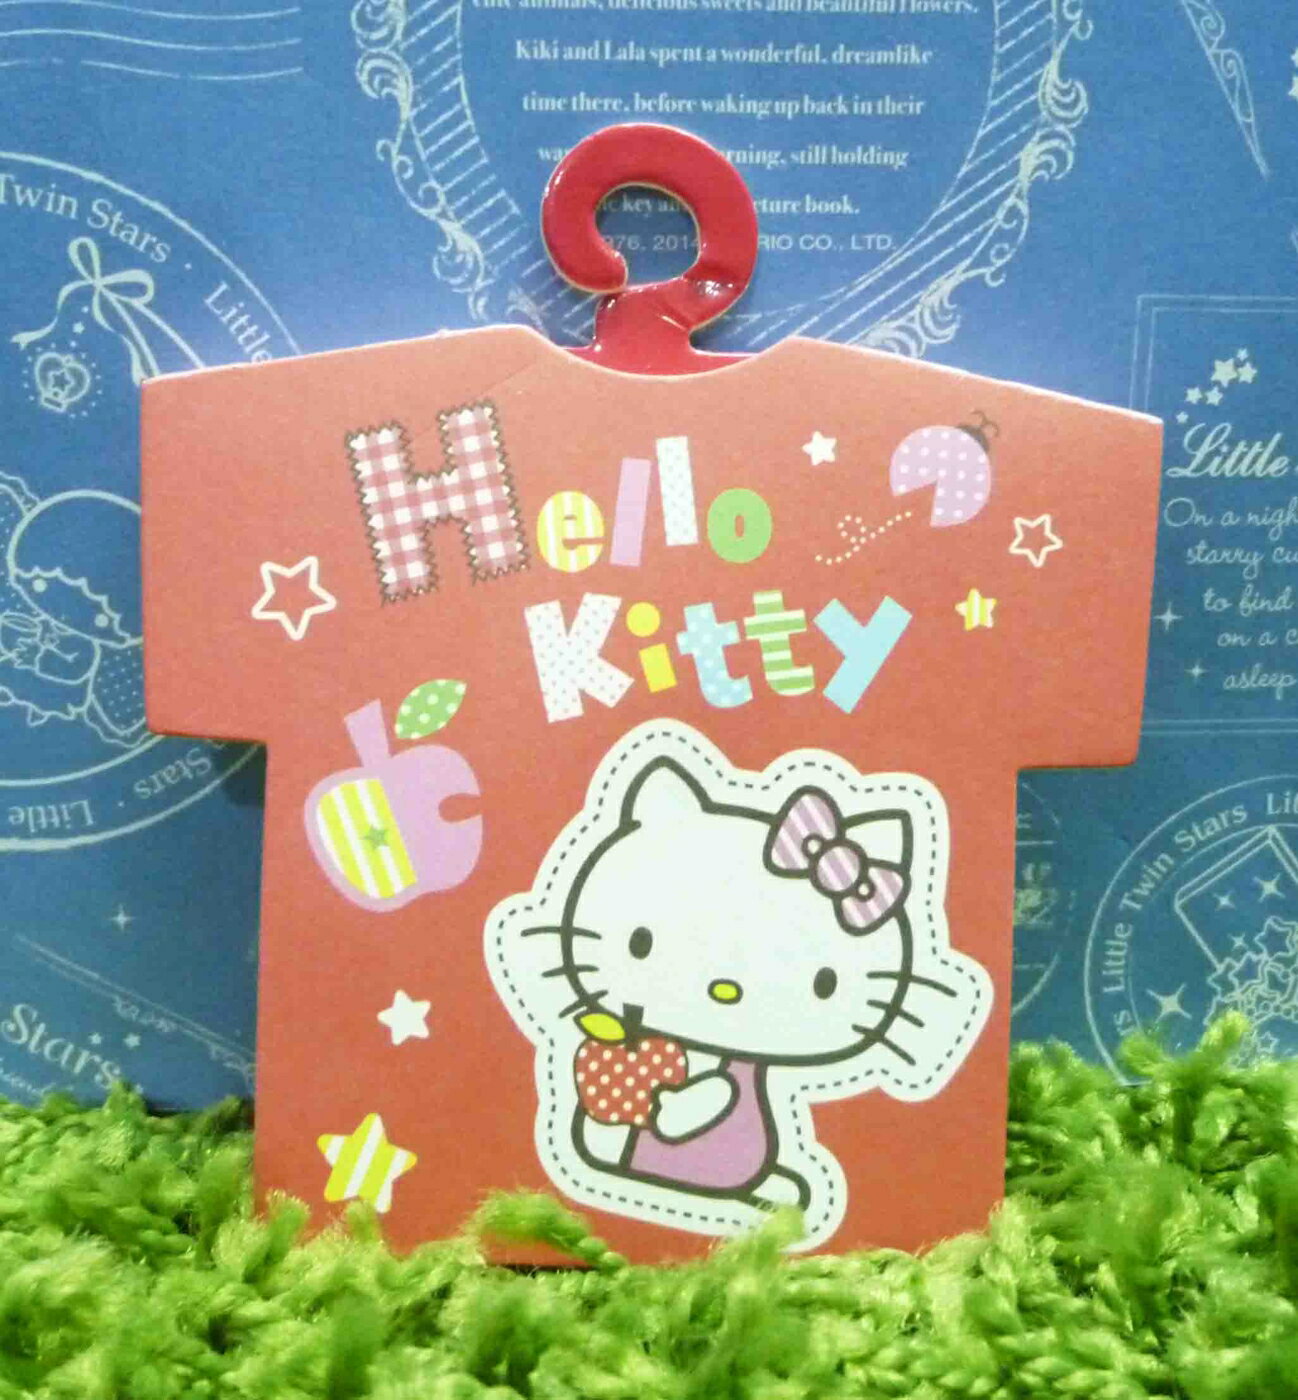 【震撼精品百貨】Hello Kitty 凱蒂貓 造型便條紙-紅衣服圖案【共1款】 震撼日式精品百貨